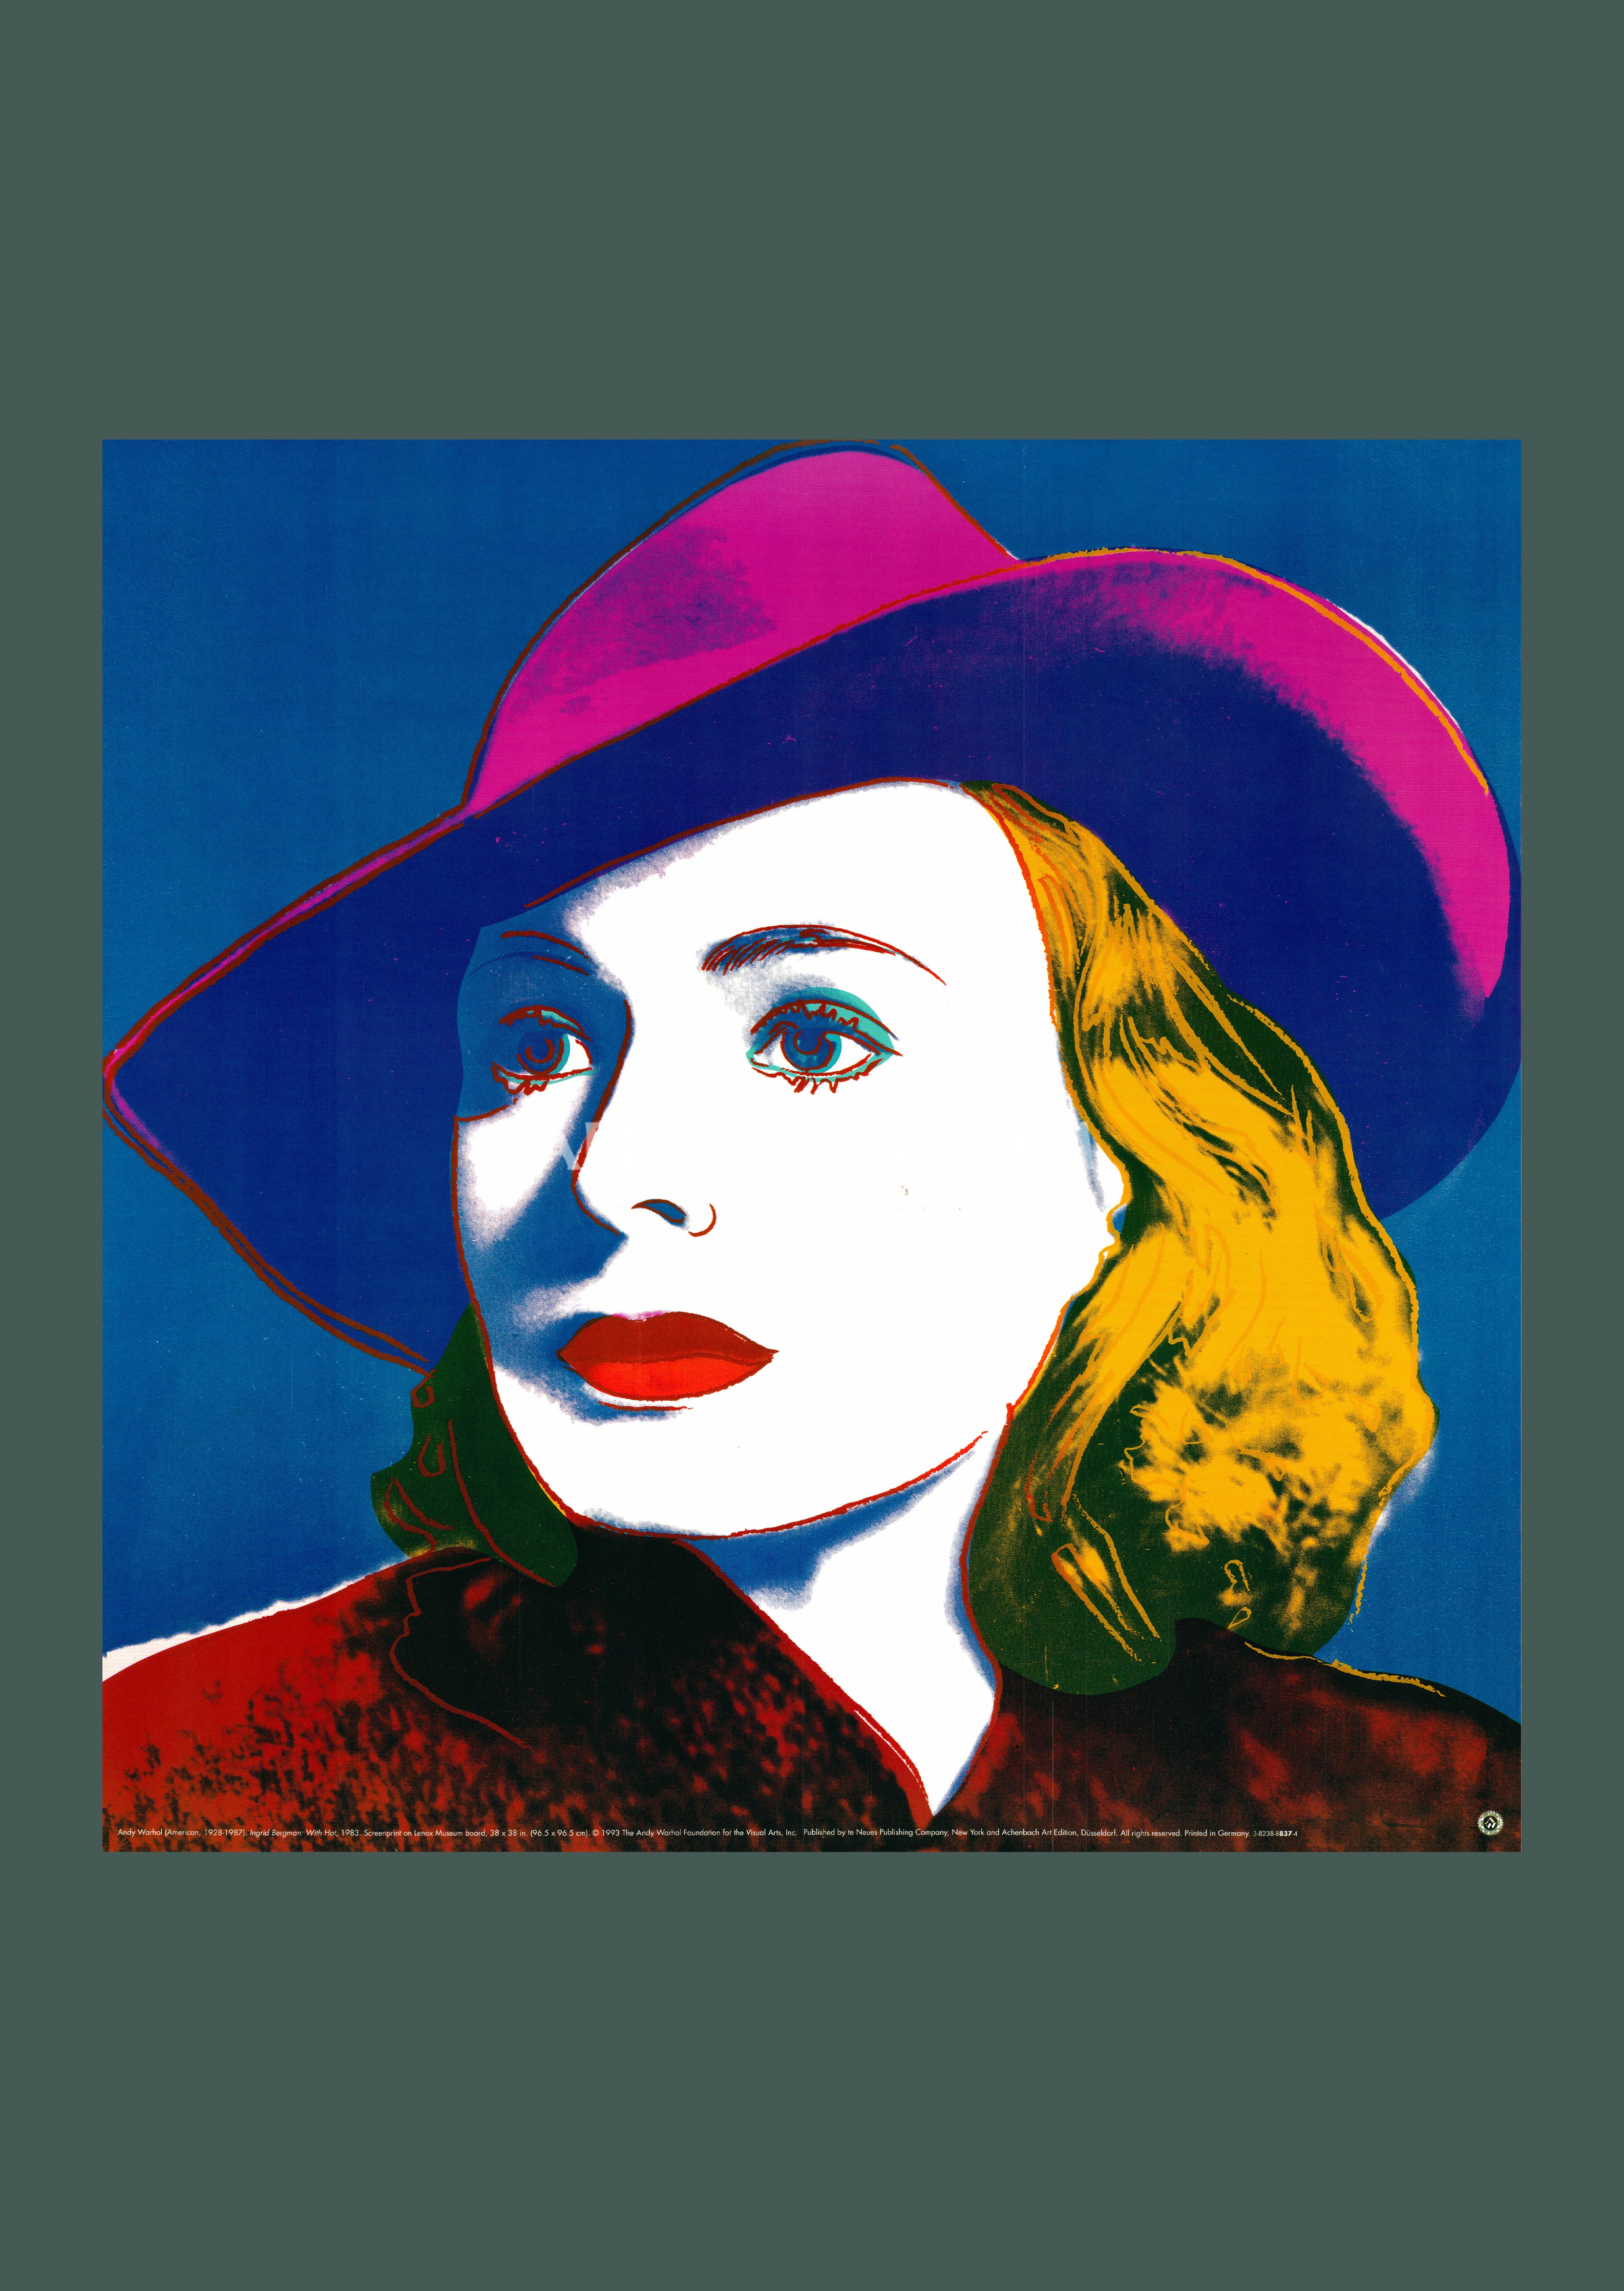 Vintage Ingrid Bergman poster with hat by Andy Warhol, 1983